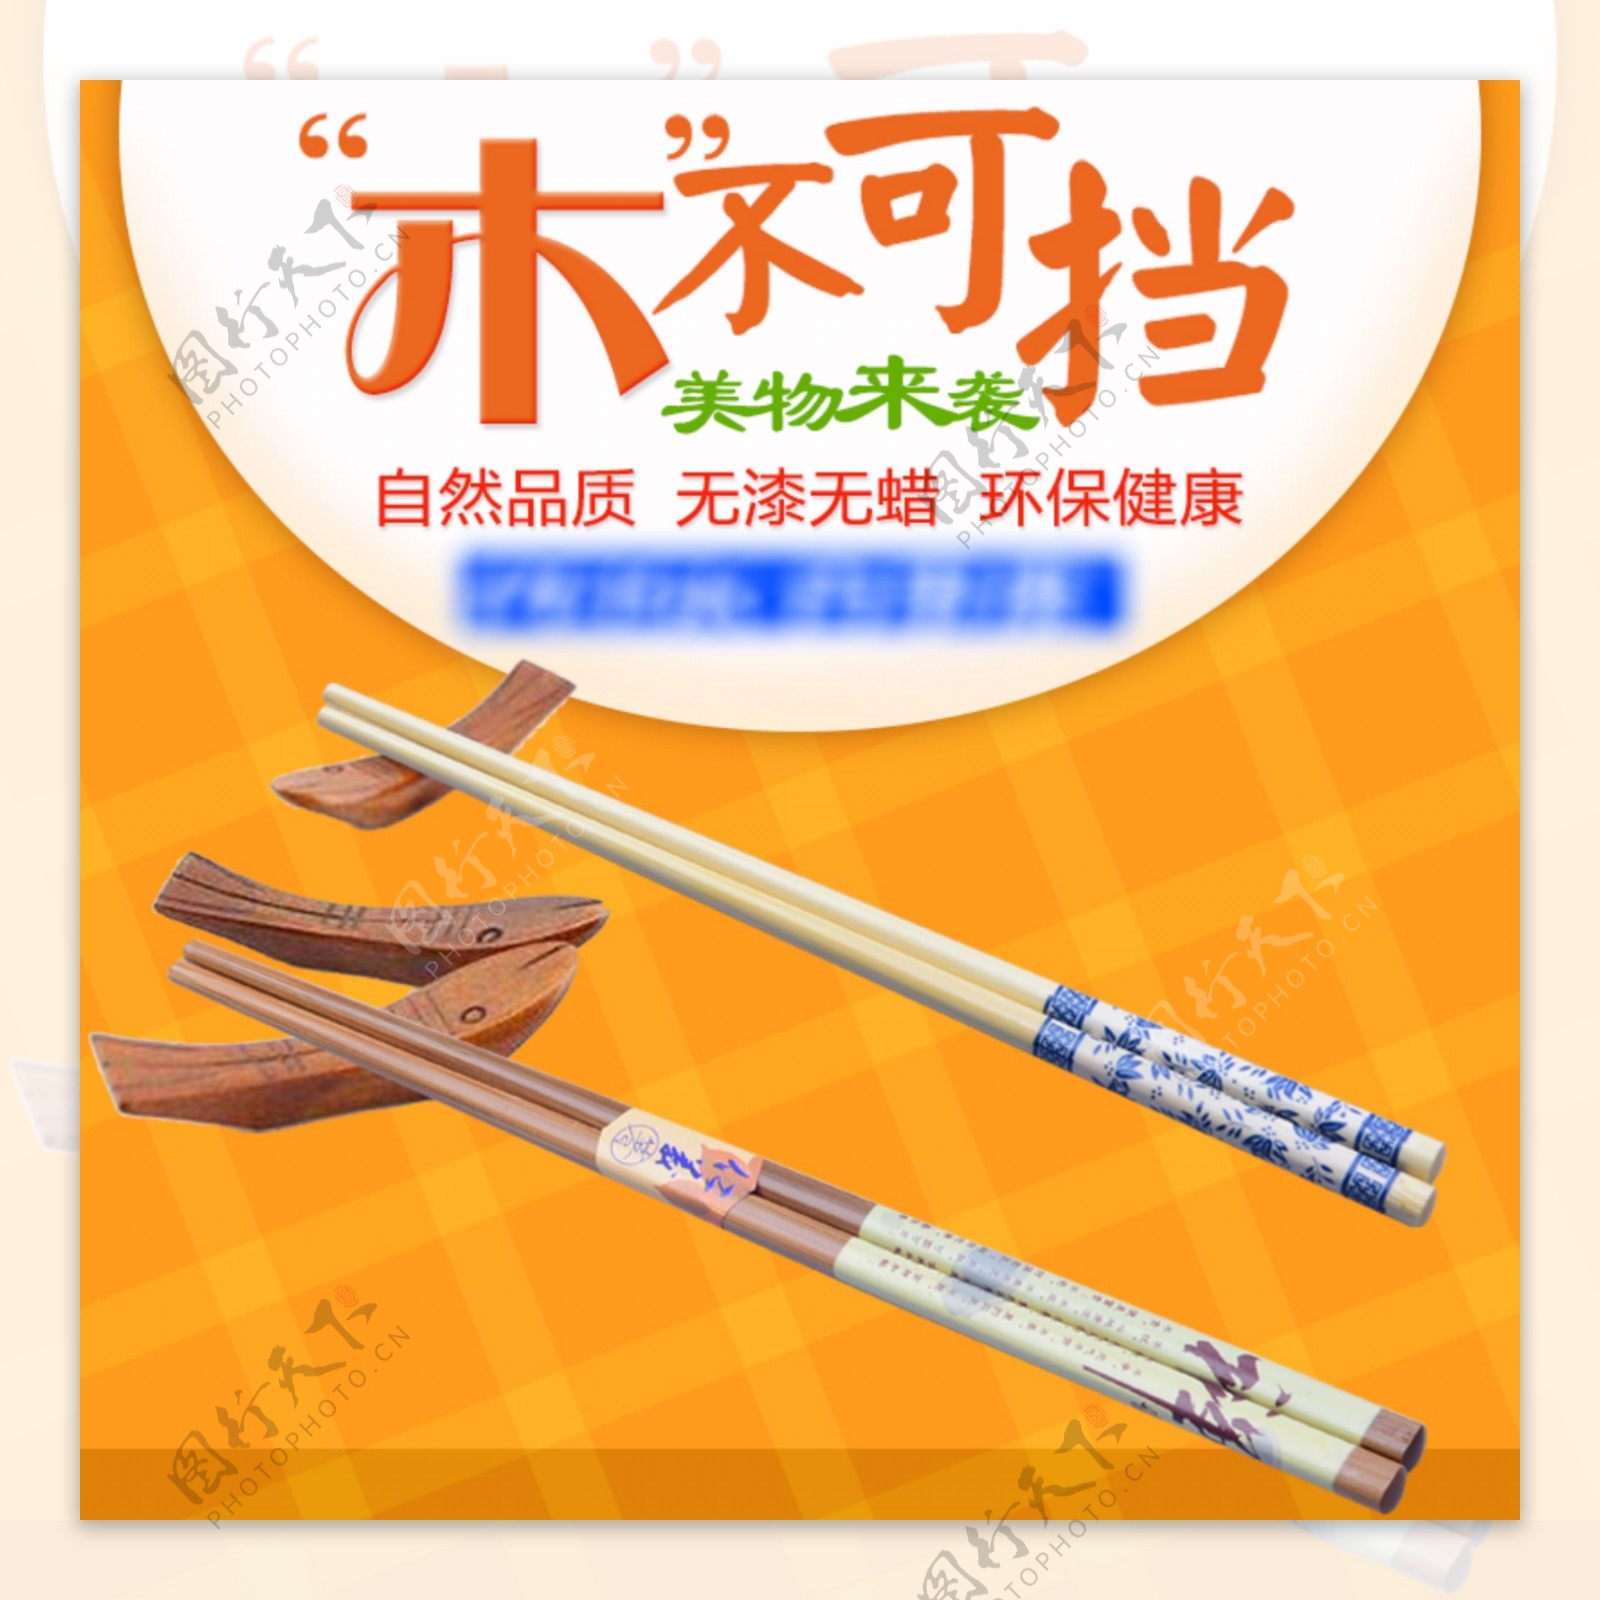 环保竹筷天猫淘宝主图